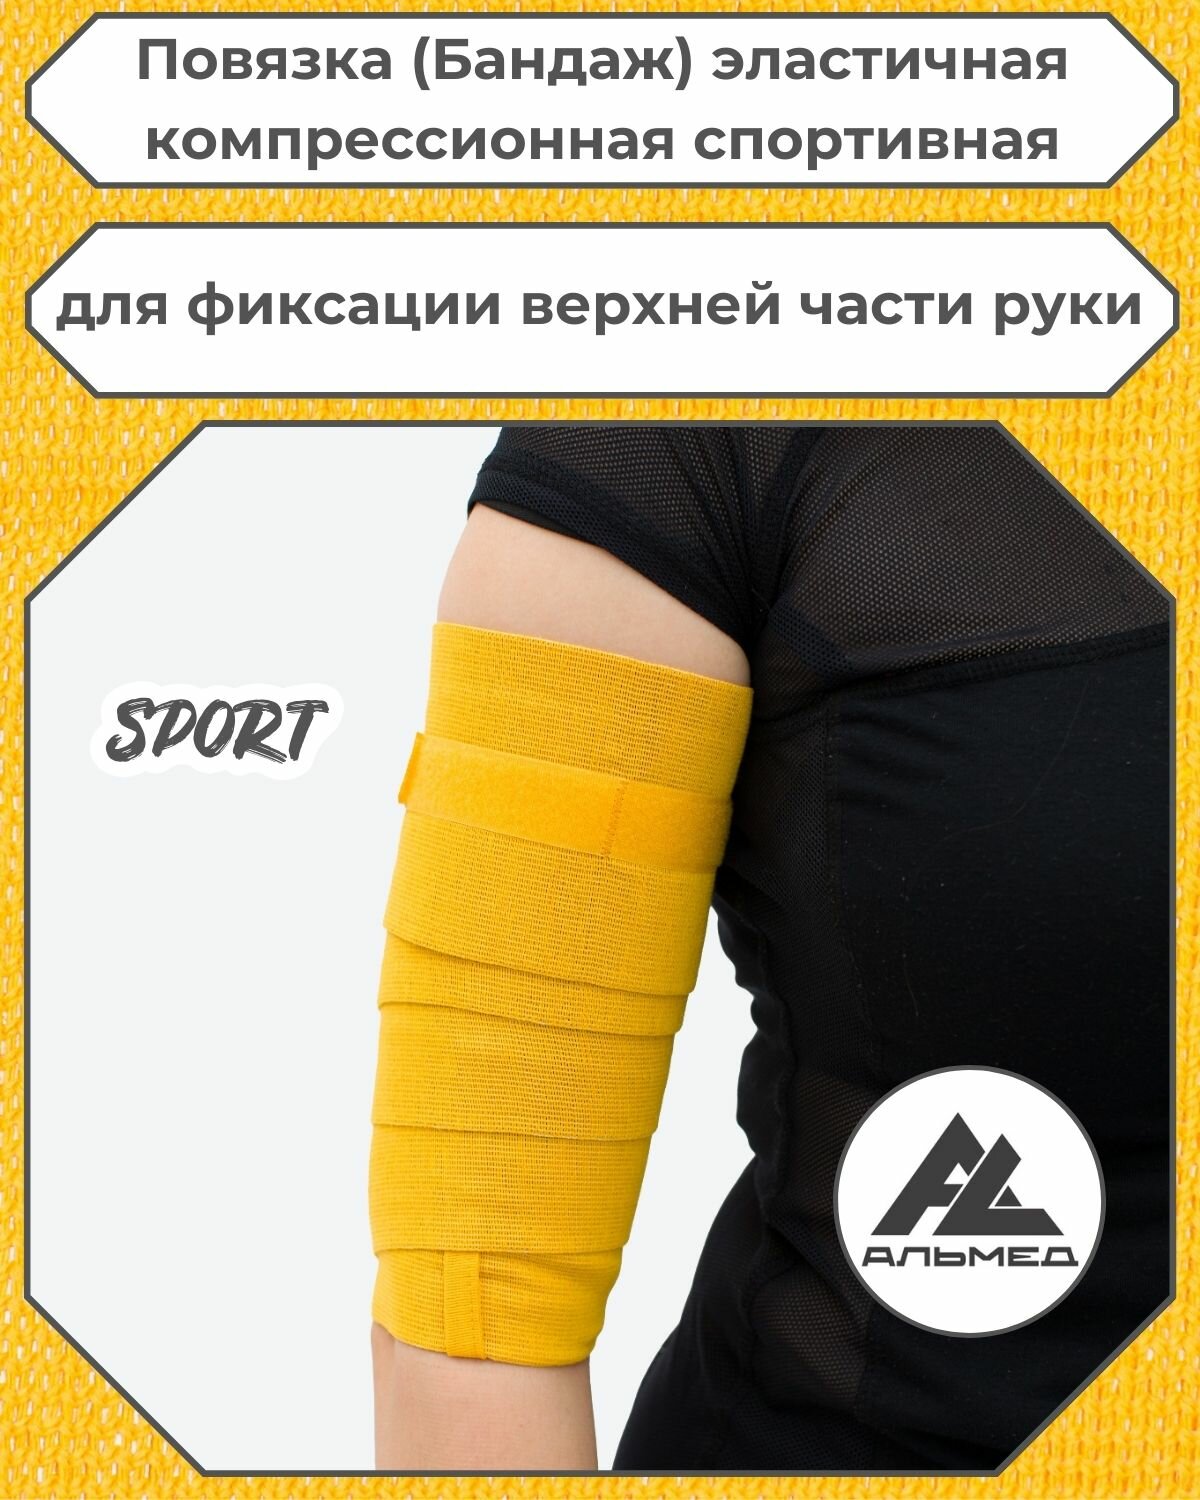 Повязка(бандаж, фиксатор)спортивная эластичная компрессионная на верхнюю часть руки, универсальная, застёжка «Velcro» 2,0 м *100мм, жёлтый, с липучкой, Альмед